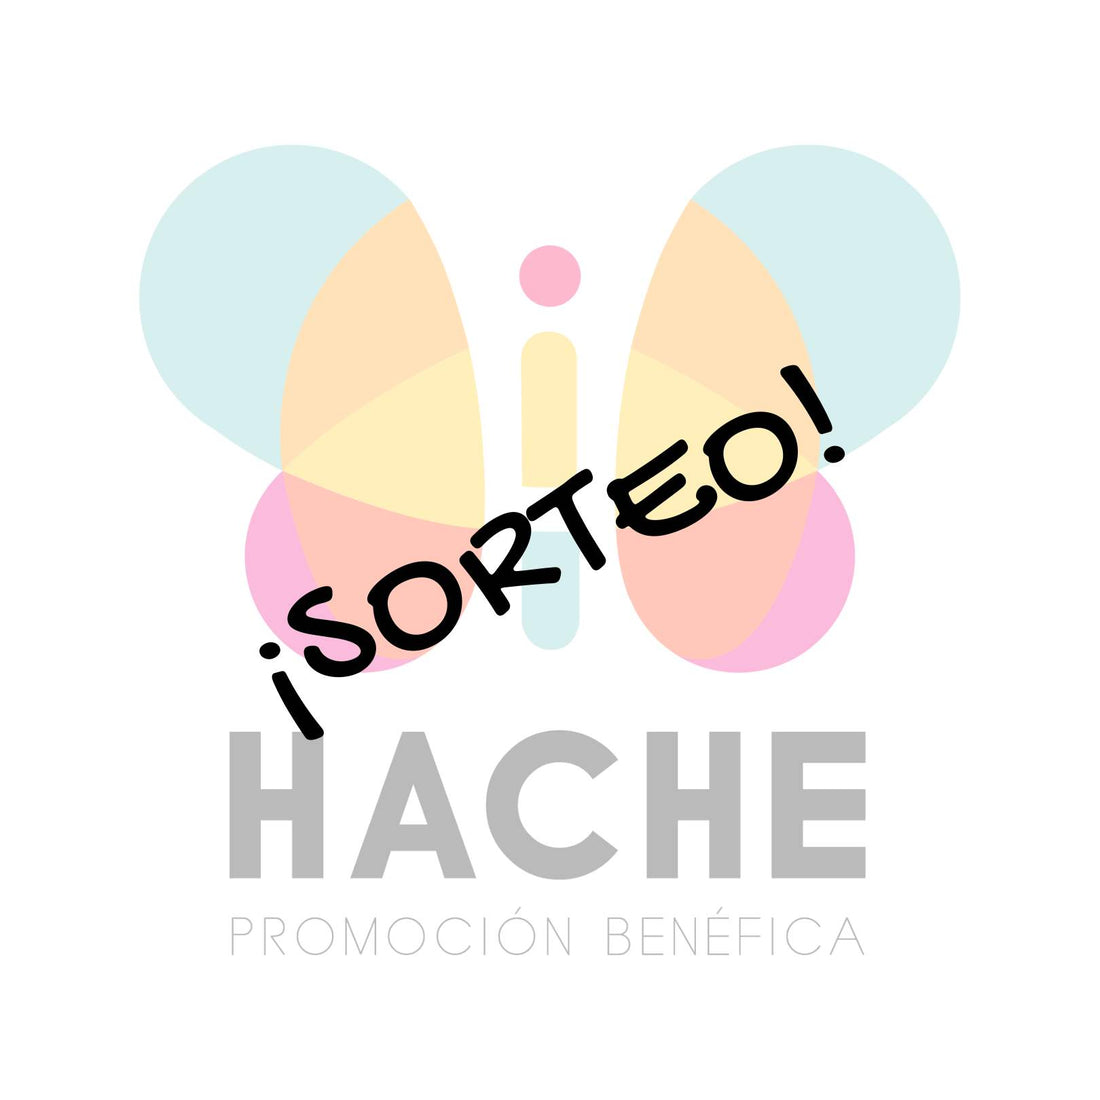 Imagen con logo de Hache al fondo semitransparente y la palabra SORTEO en negro superpuesta al logo